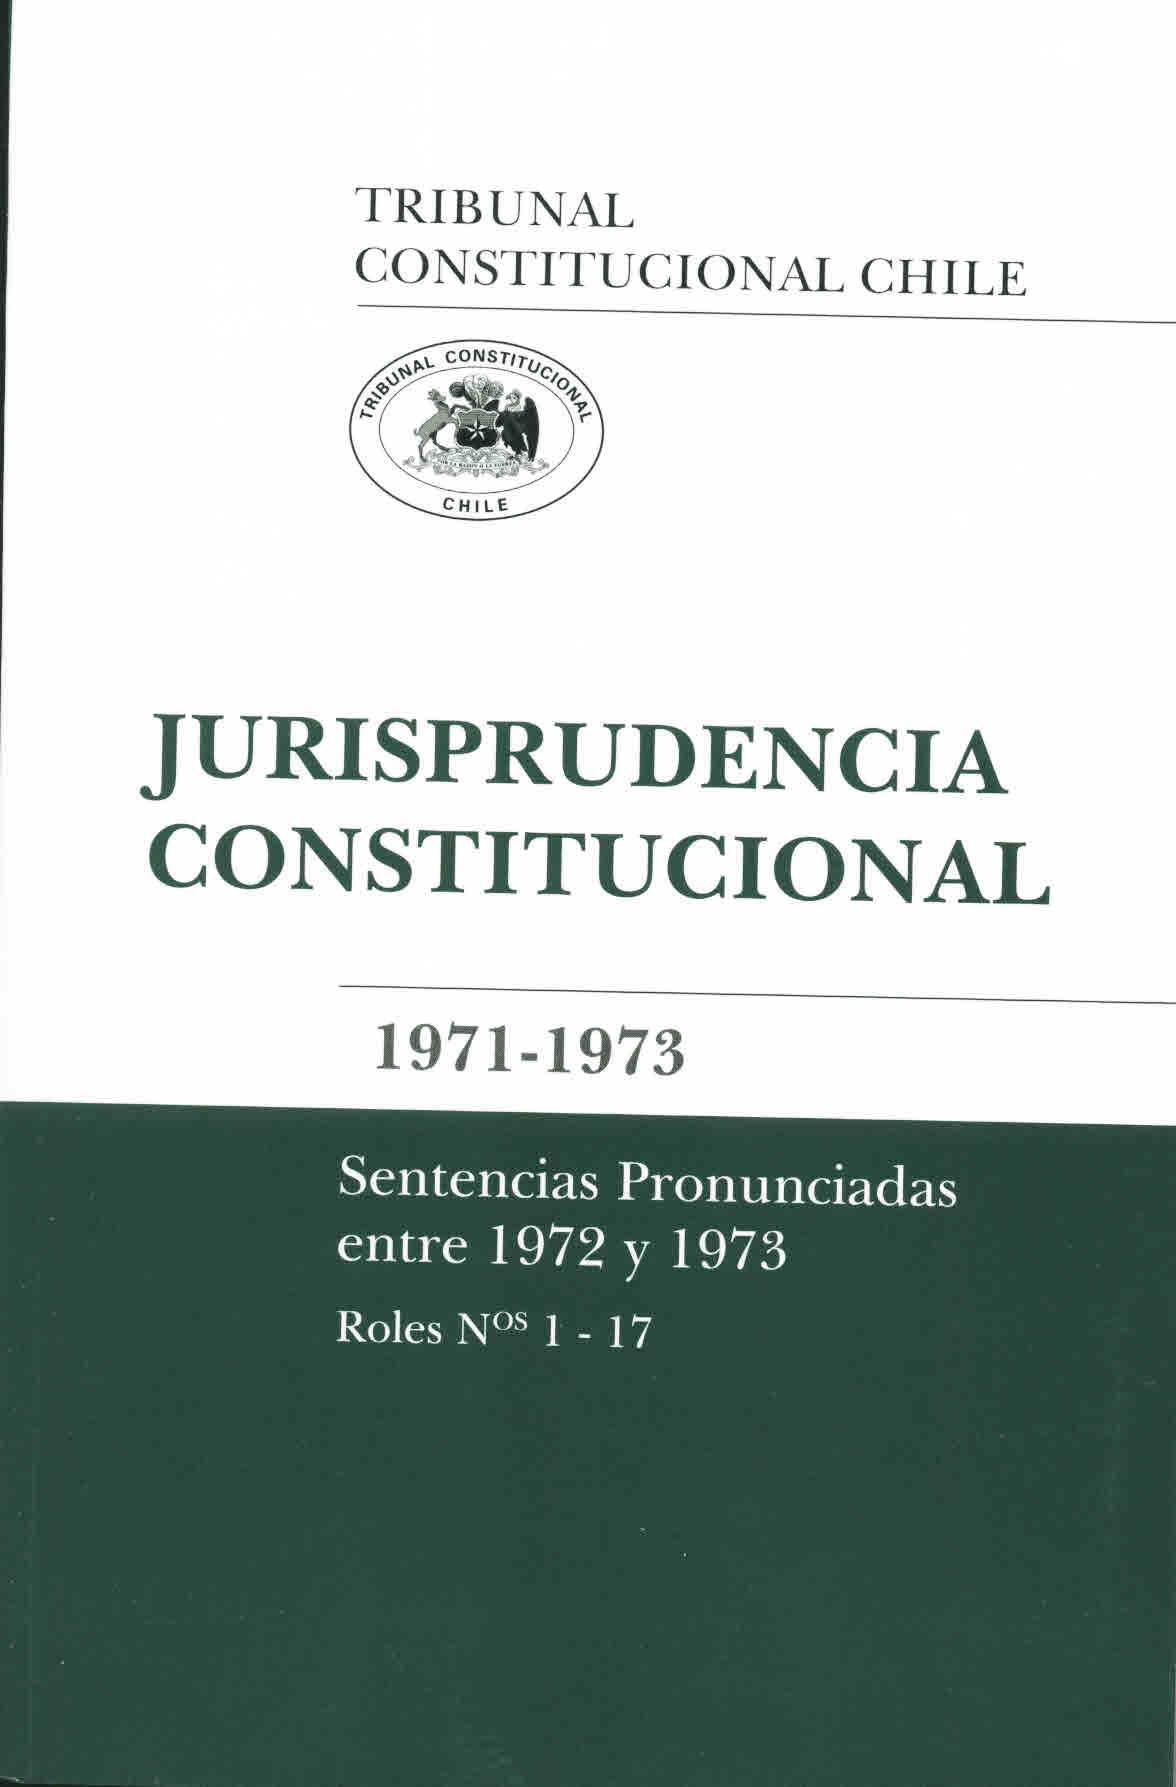 Jurisprudencia constitucional 1971-1973. Sentencias pronunciadas entre 1972 y 1973 roles N°s 1-17